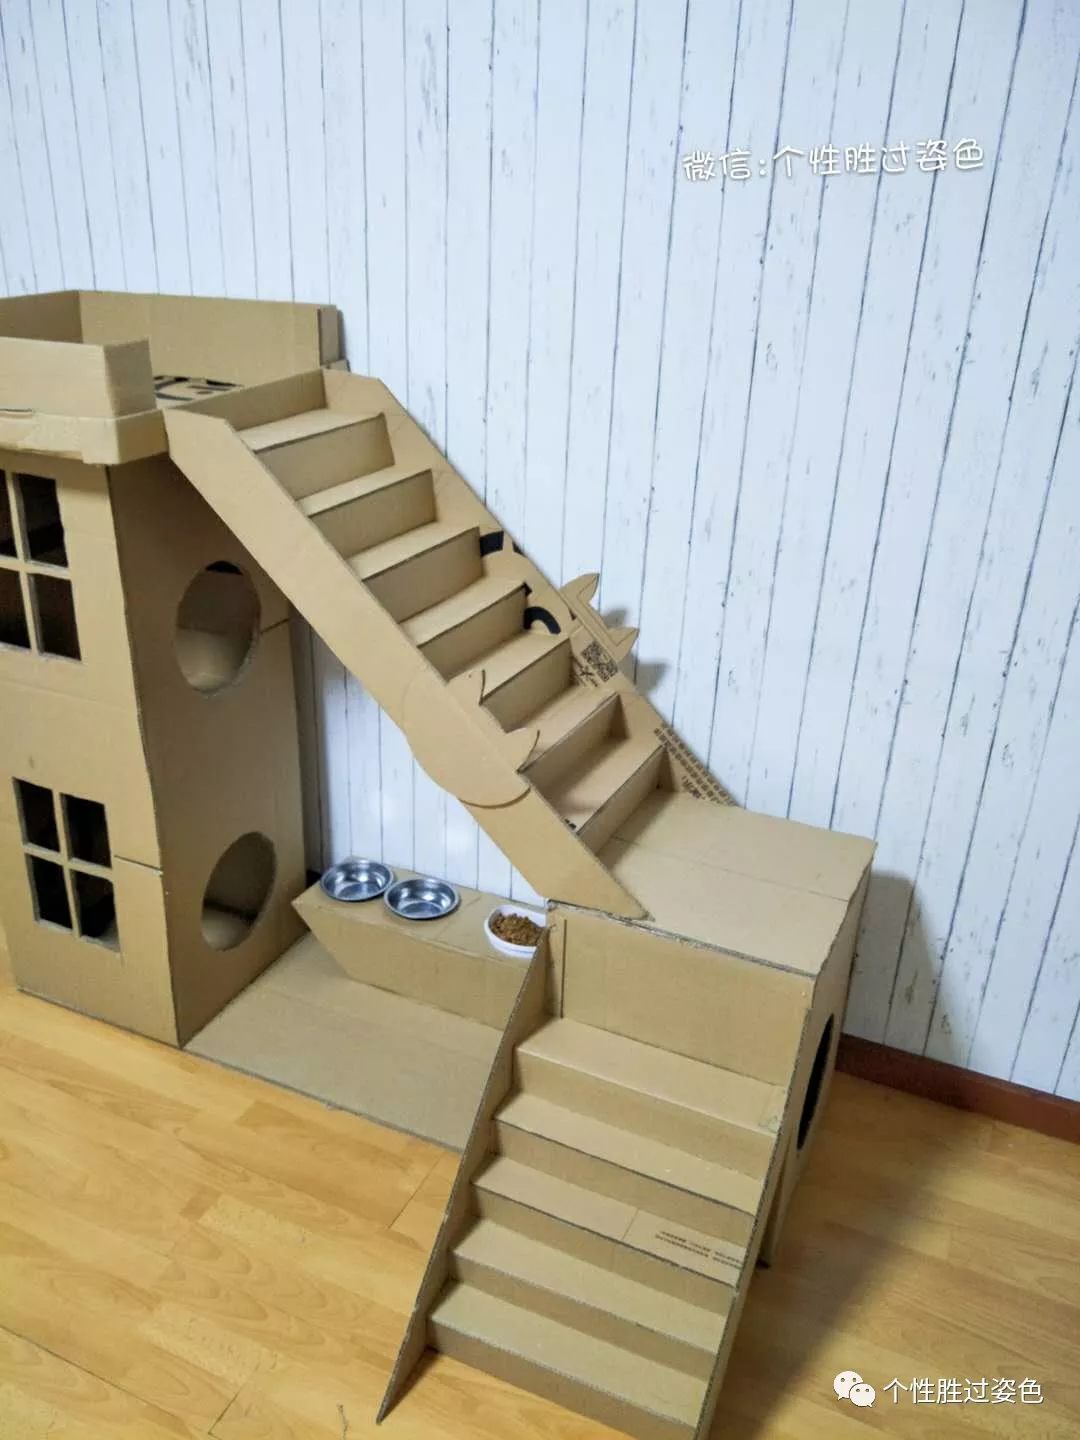 如何自己用木板做出一个猫爬架和猫别墅？ - 知乎